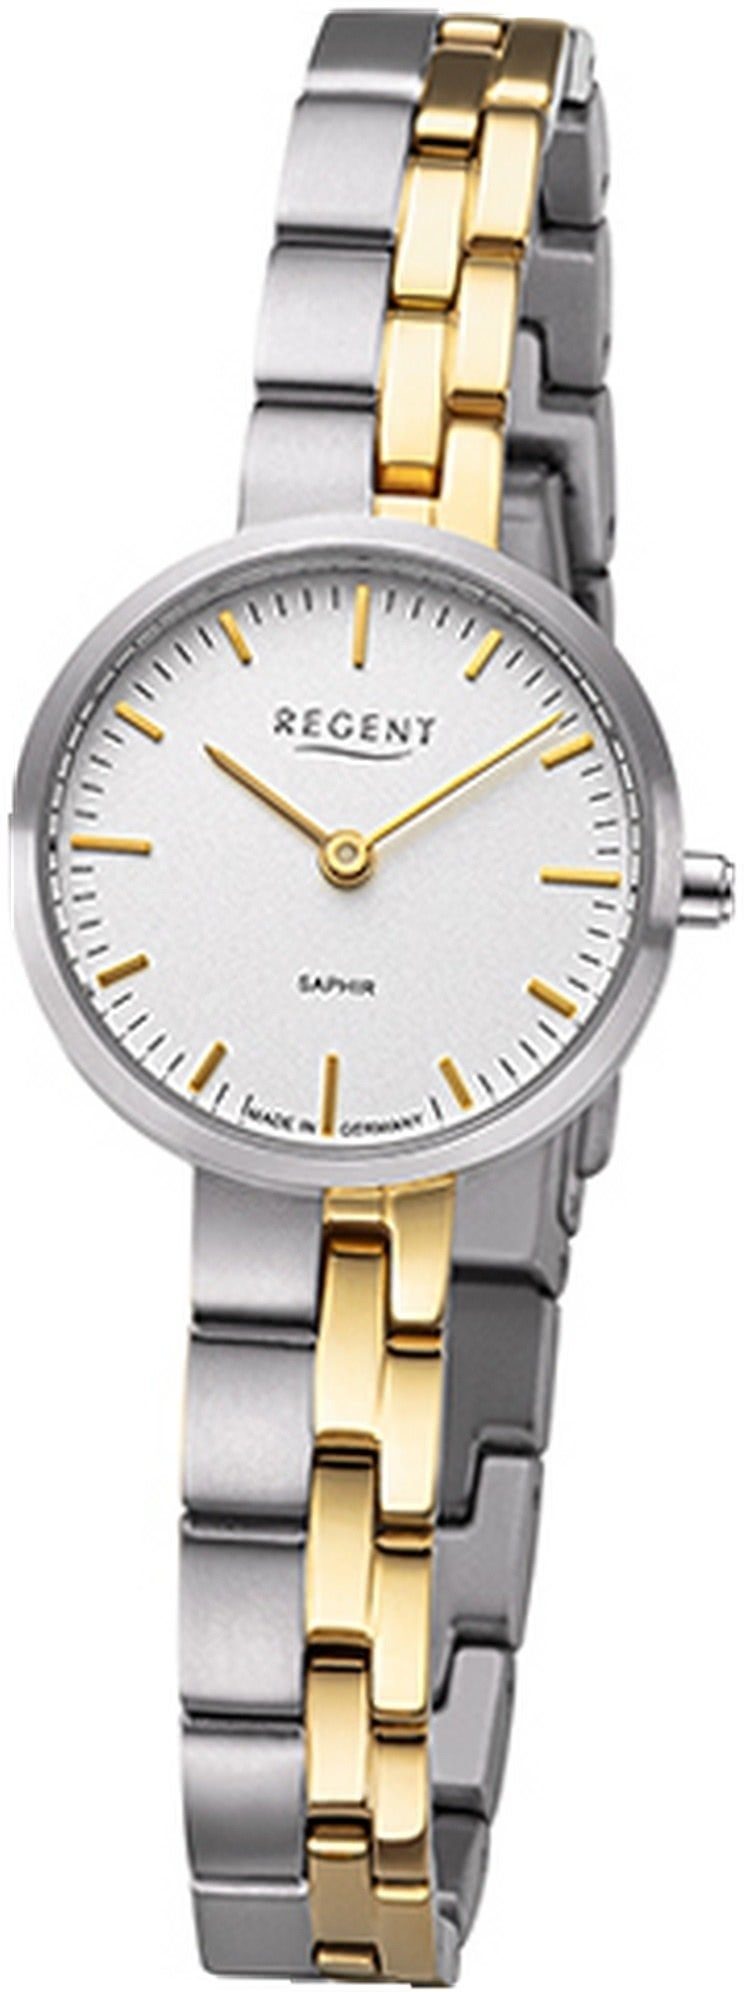 Regent Quarzuhr Regent Damen Armbanduhr Analog, Damenuhr Titanbandarmband silber, gold, rundes Gehäuse, klein (26mm)